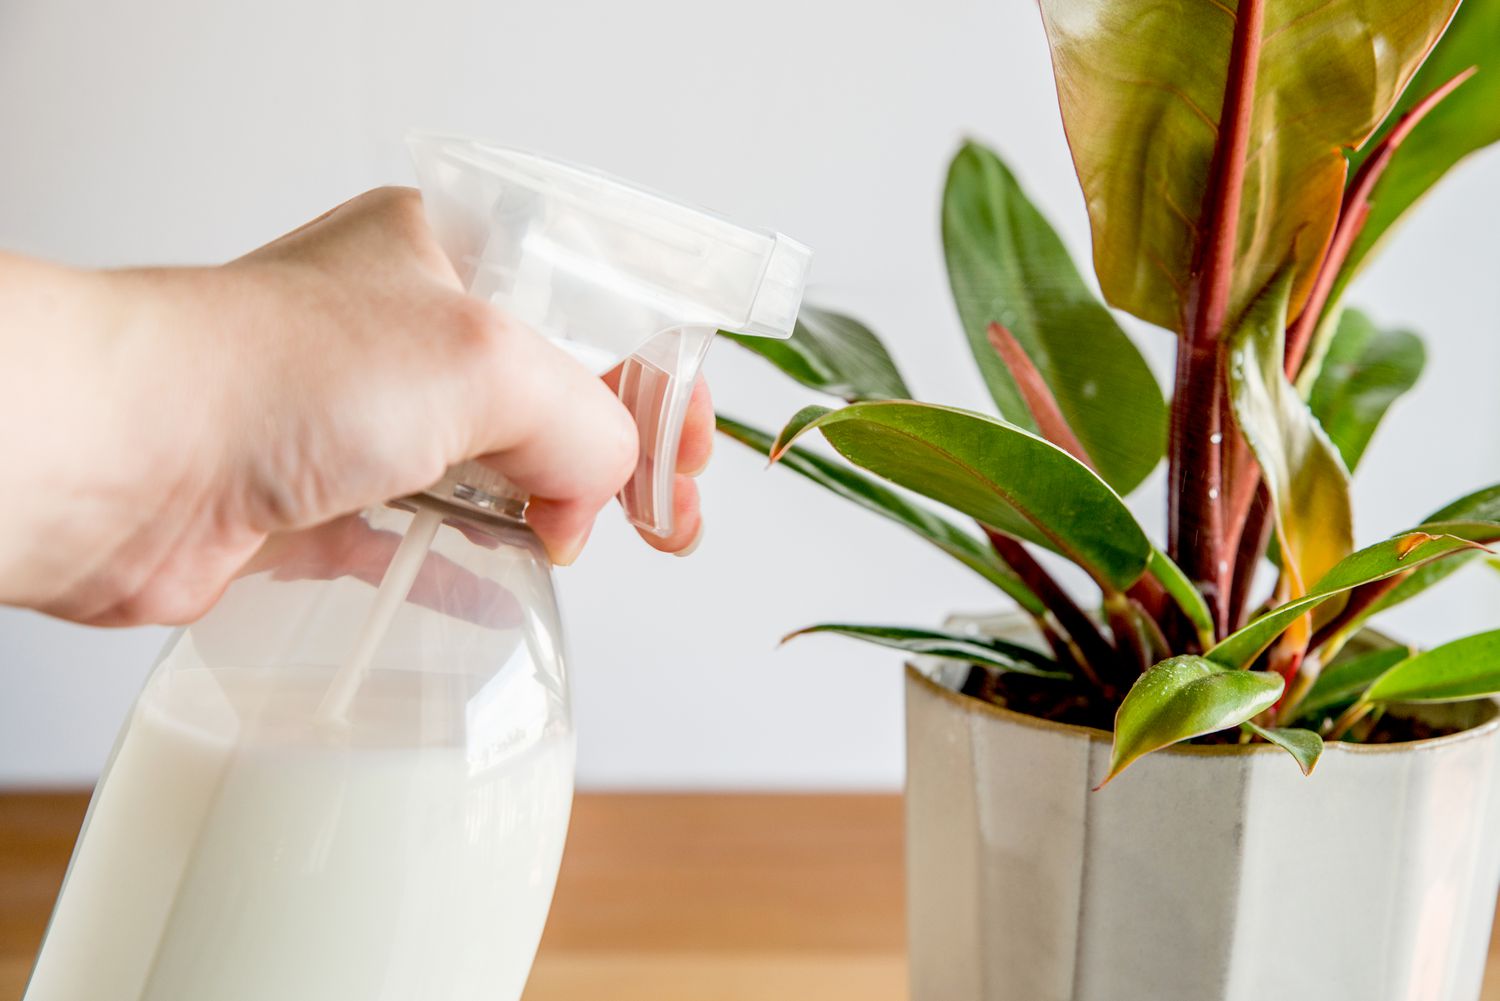 pulverizando leite em spray em uma planta